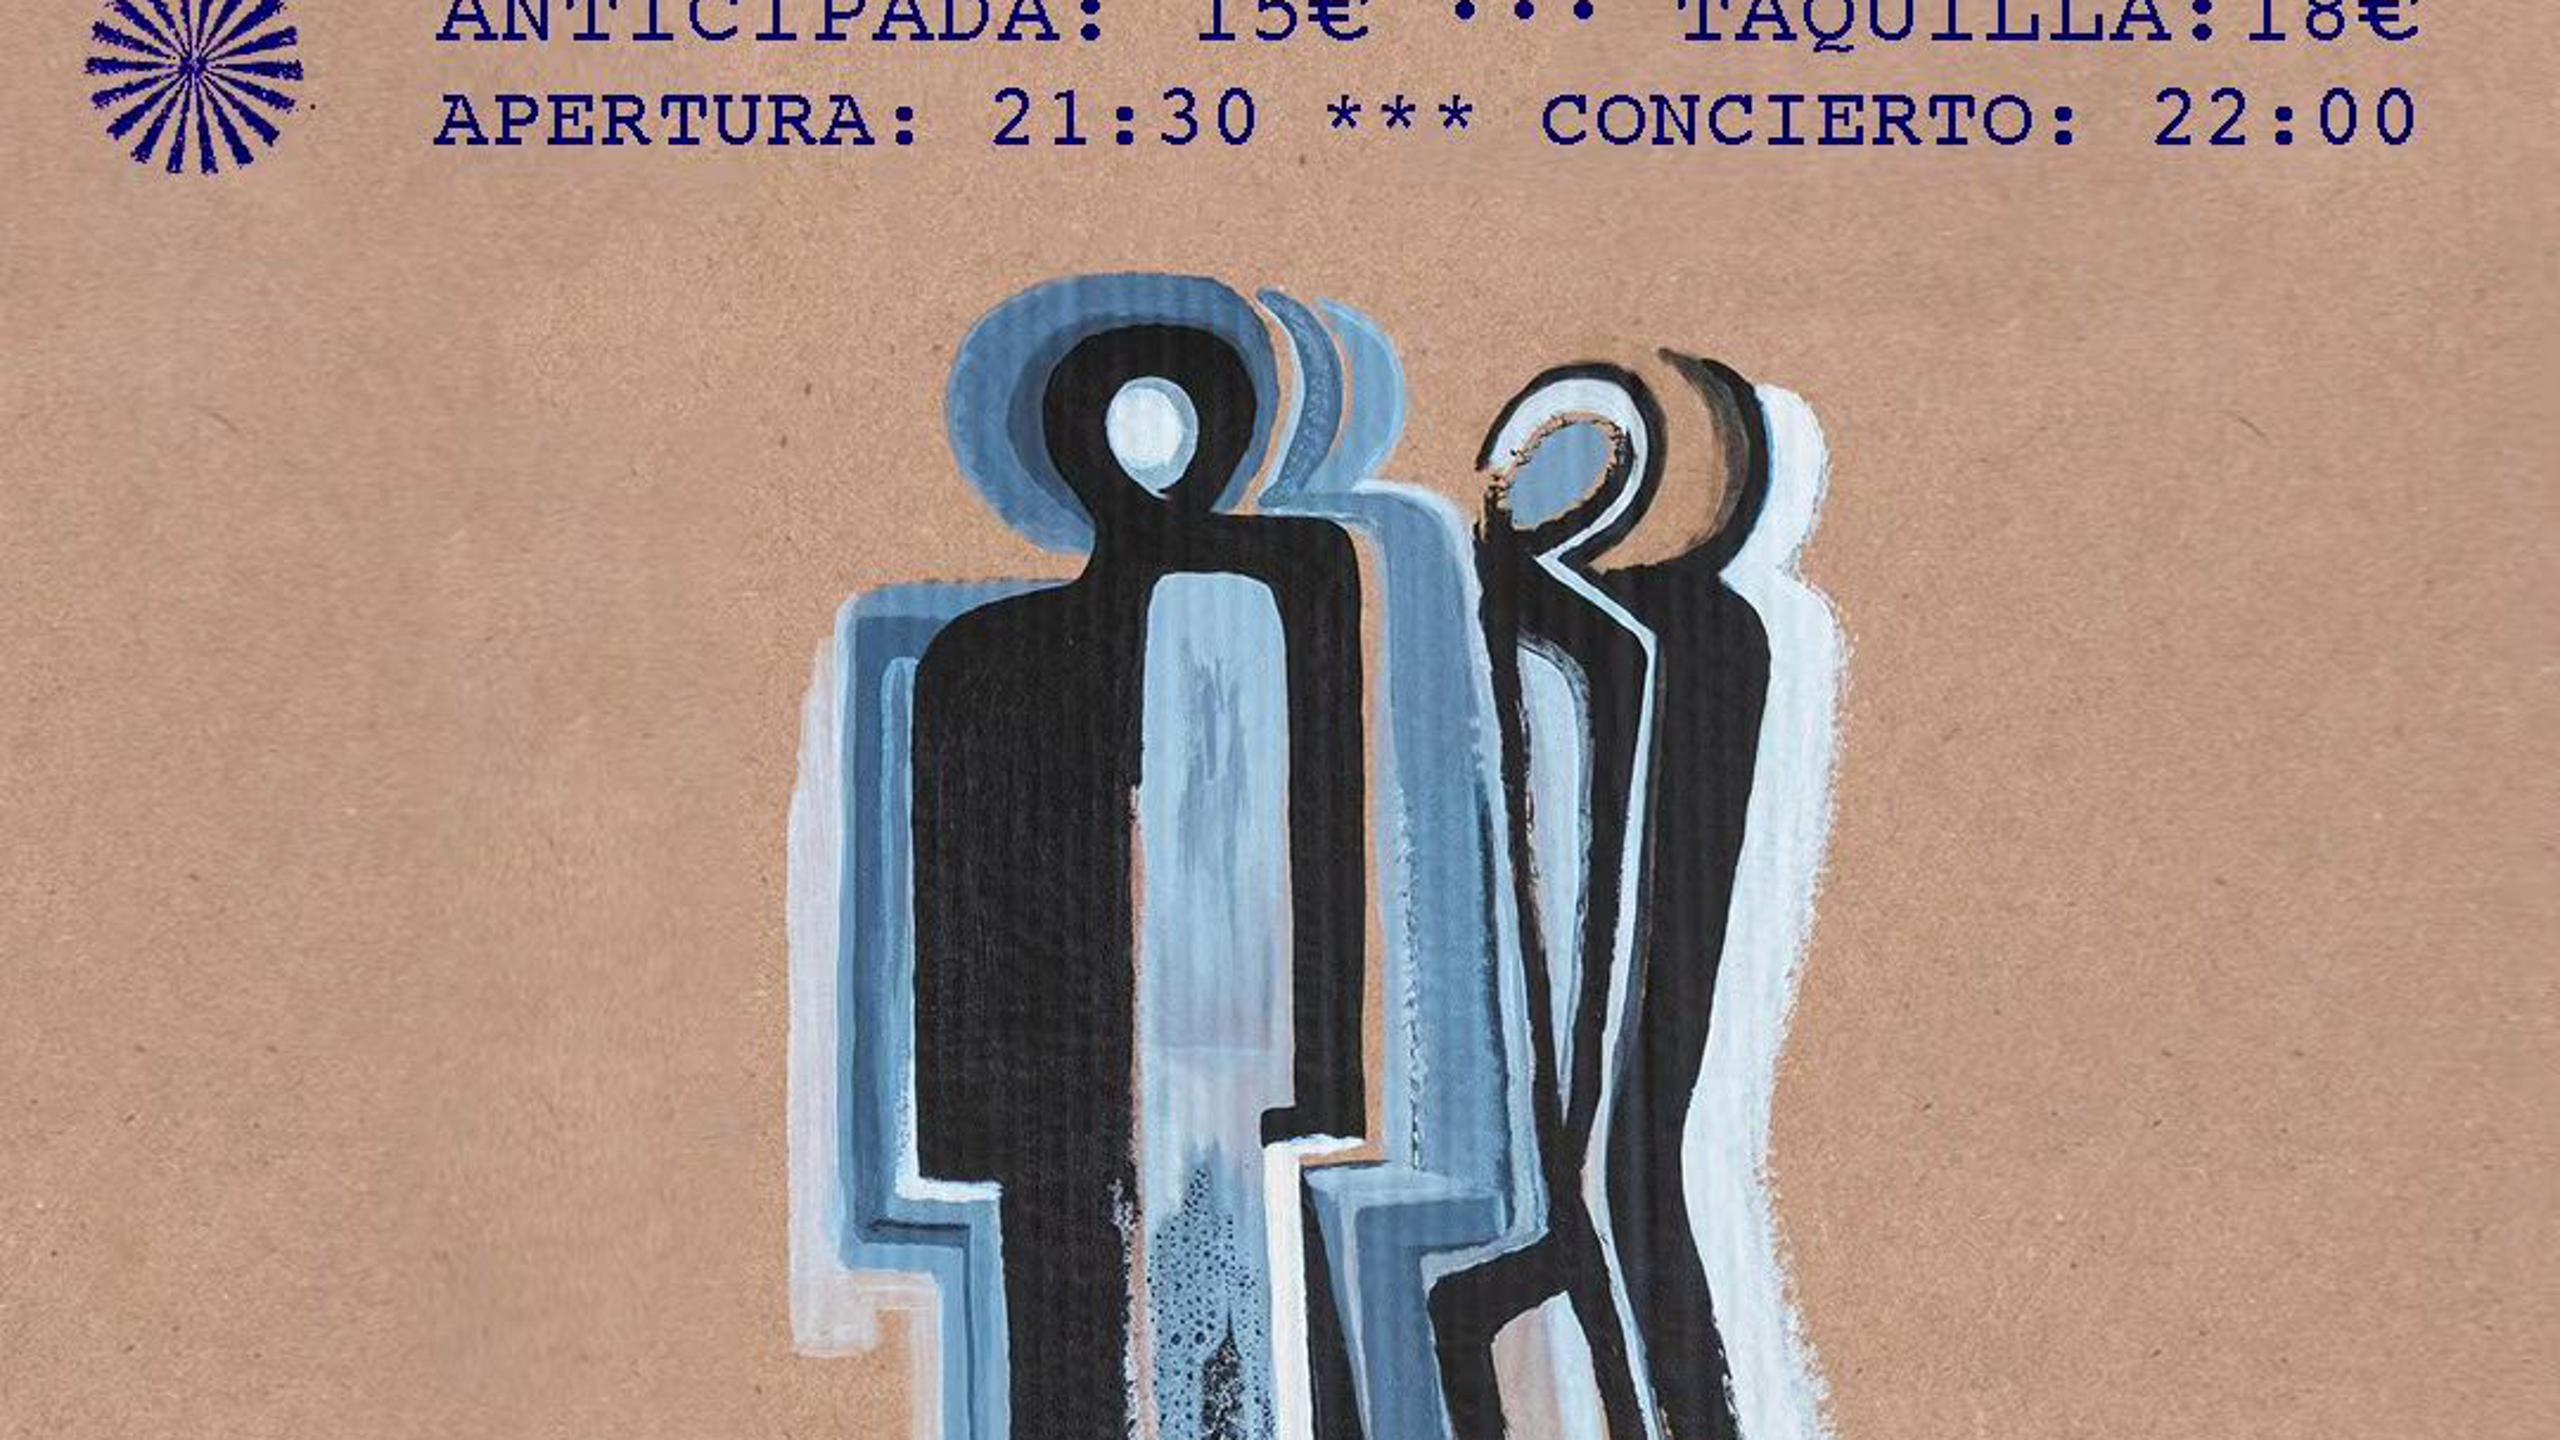 Fotografía promocional de Florent y yo en concierto en Madrid